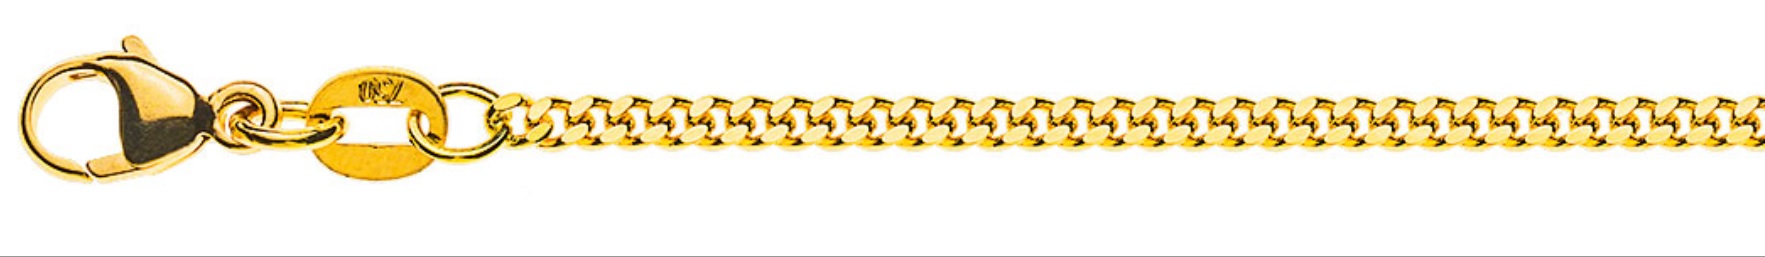 AURONOS Prestige Halskette Gelbgold 18K Panzerkette geschliffen 45cm 2.0mm